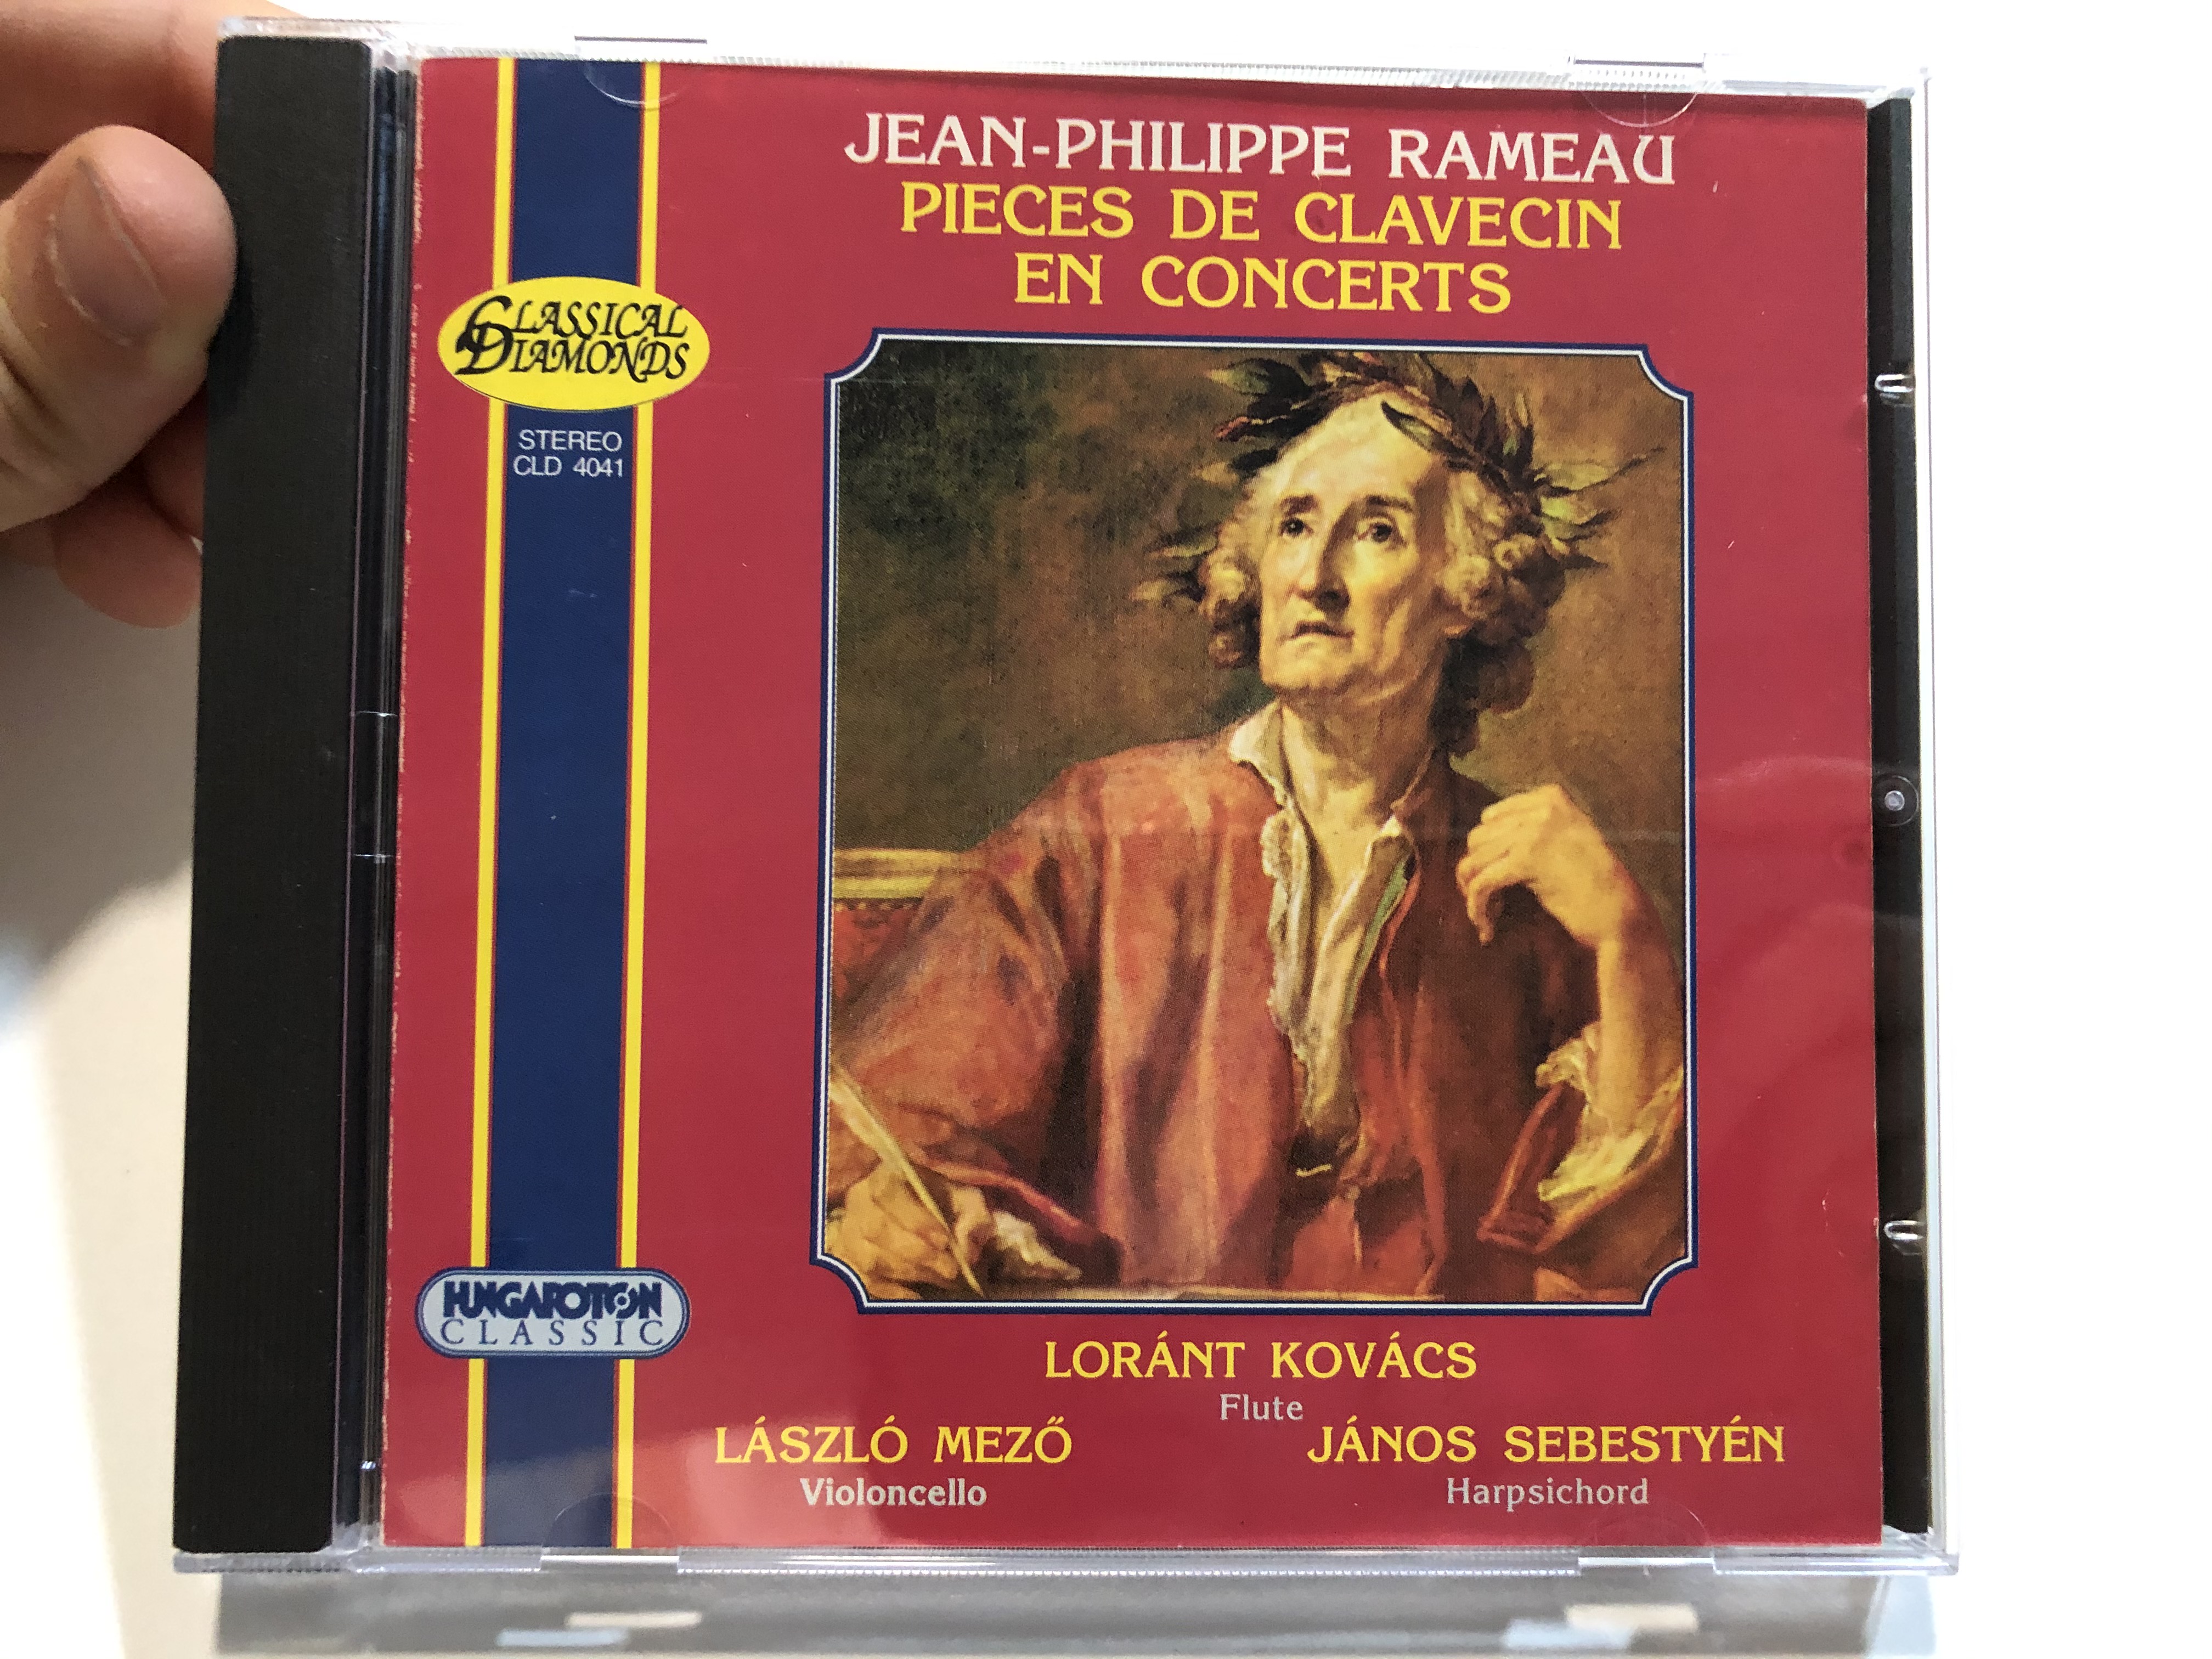 jean-philippe-rameau-pieces-de-clavecin-en-concerts-l-r-nt-kov-cs-flute-l-szl-mez-violoncello-j-nos-sebesty-n-harpsichord-hungaroton-classic-audio-cd-1999-stereo-cld-4041-1-.jpg